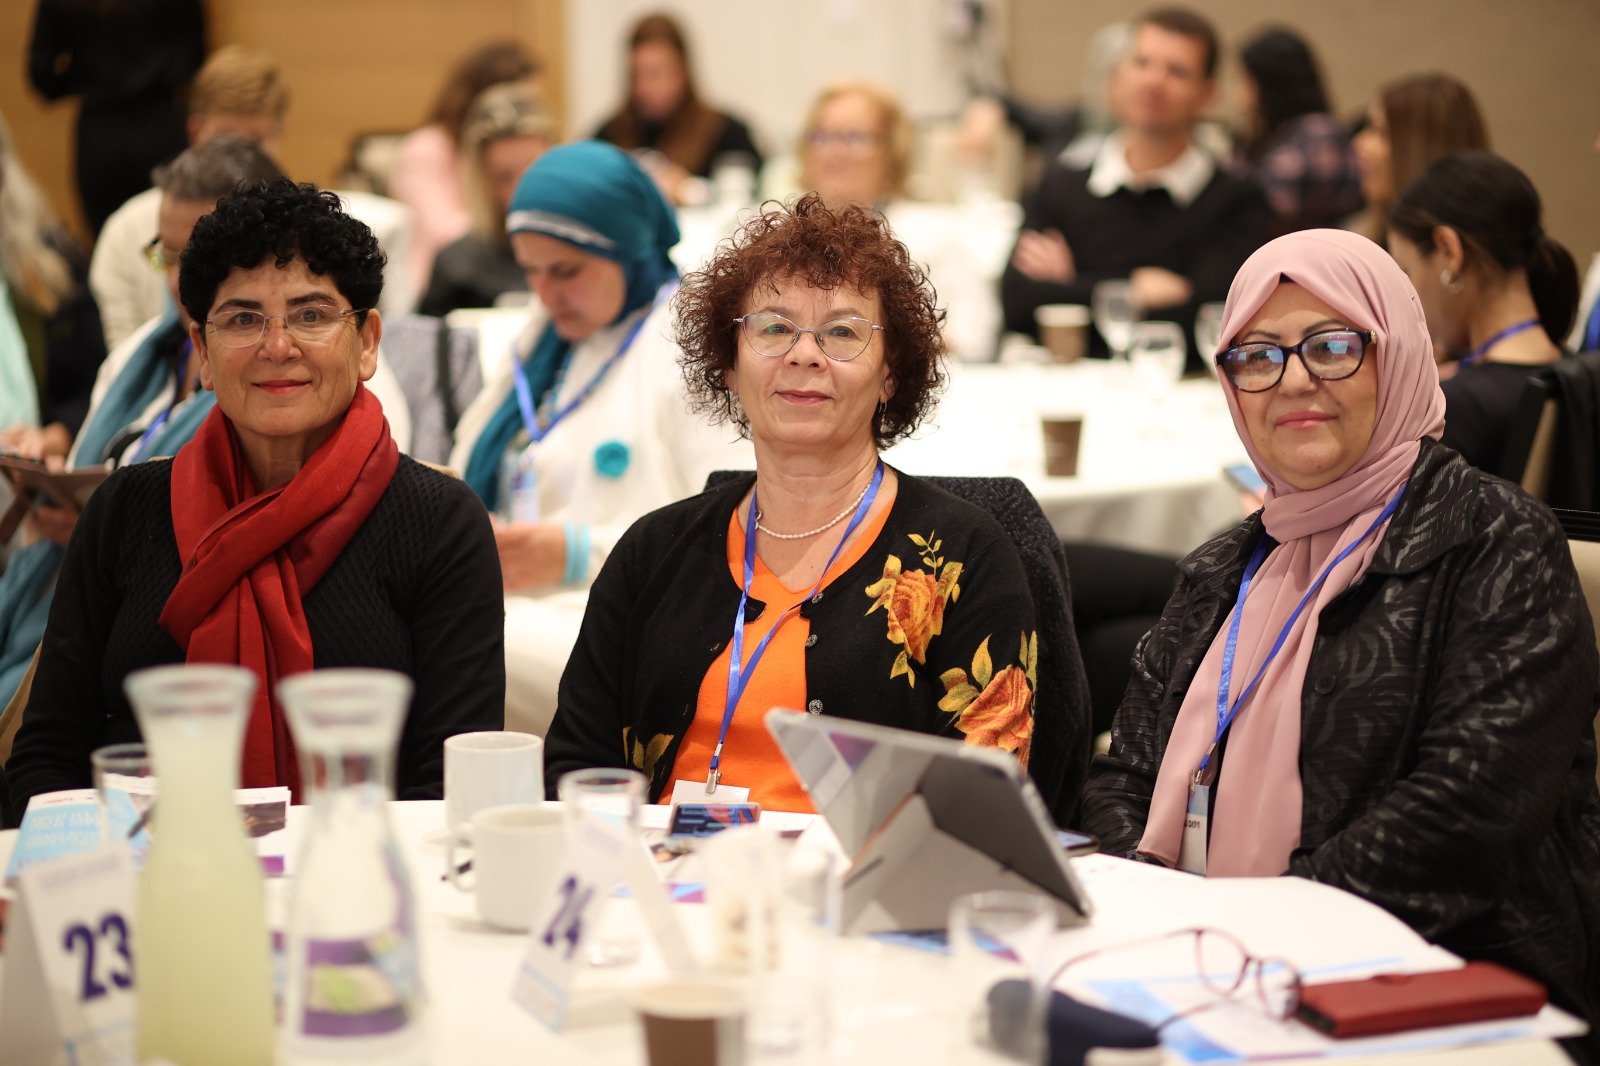 المؤتمر النسائي الأضخم والأول من نوعه بمبادرة "بكرا" .. تلخيصات وتوصيات هامة في مختلف المجالات-180